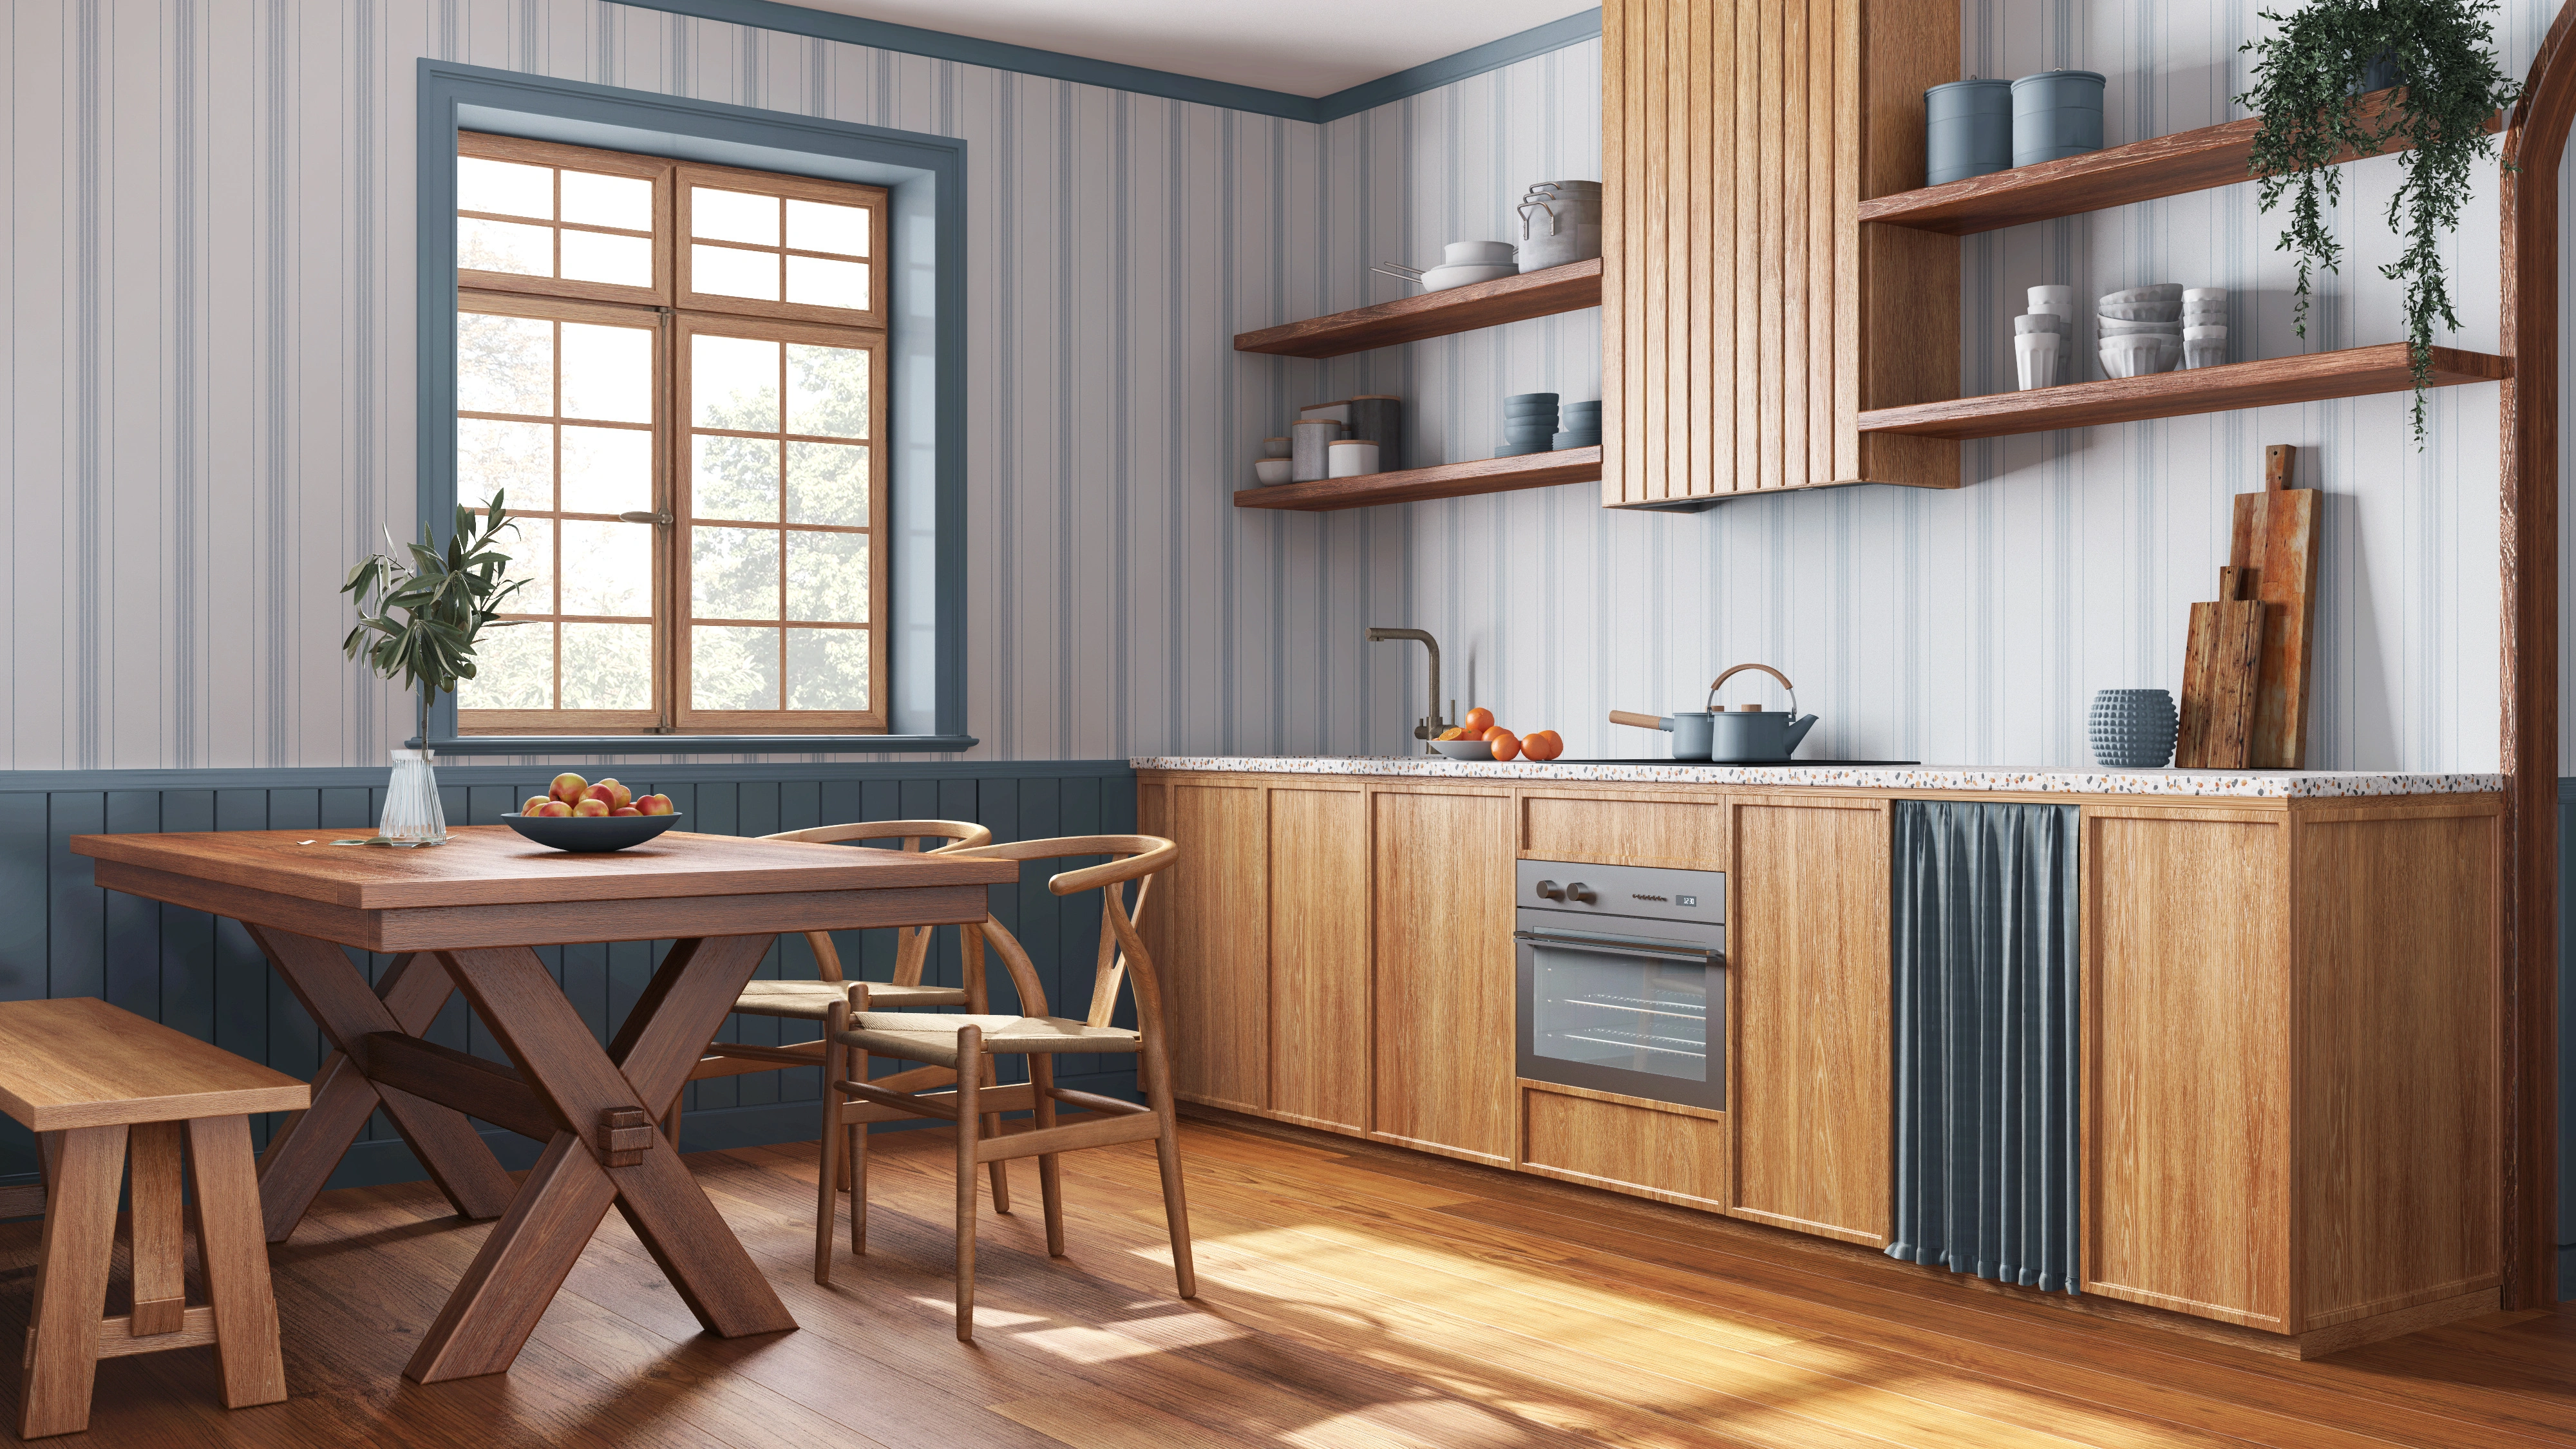 Inspiracja prezentująca kuchnię w kolorze beżowym z drewnianymi szafkami kuchennymi, styl marynistyczny. Element charakterystyczny: drewniane szafki kuchenne